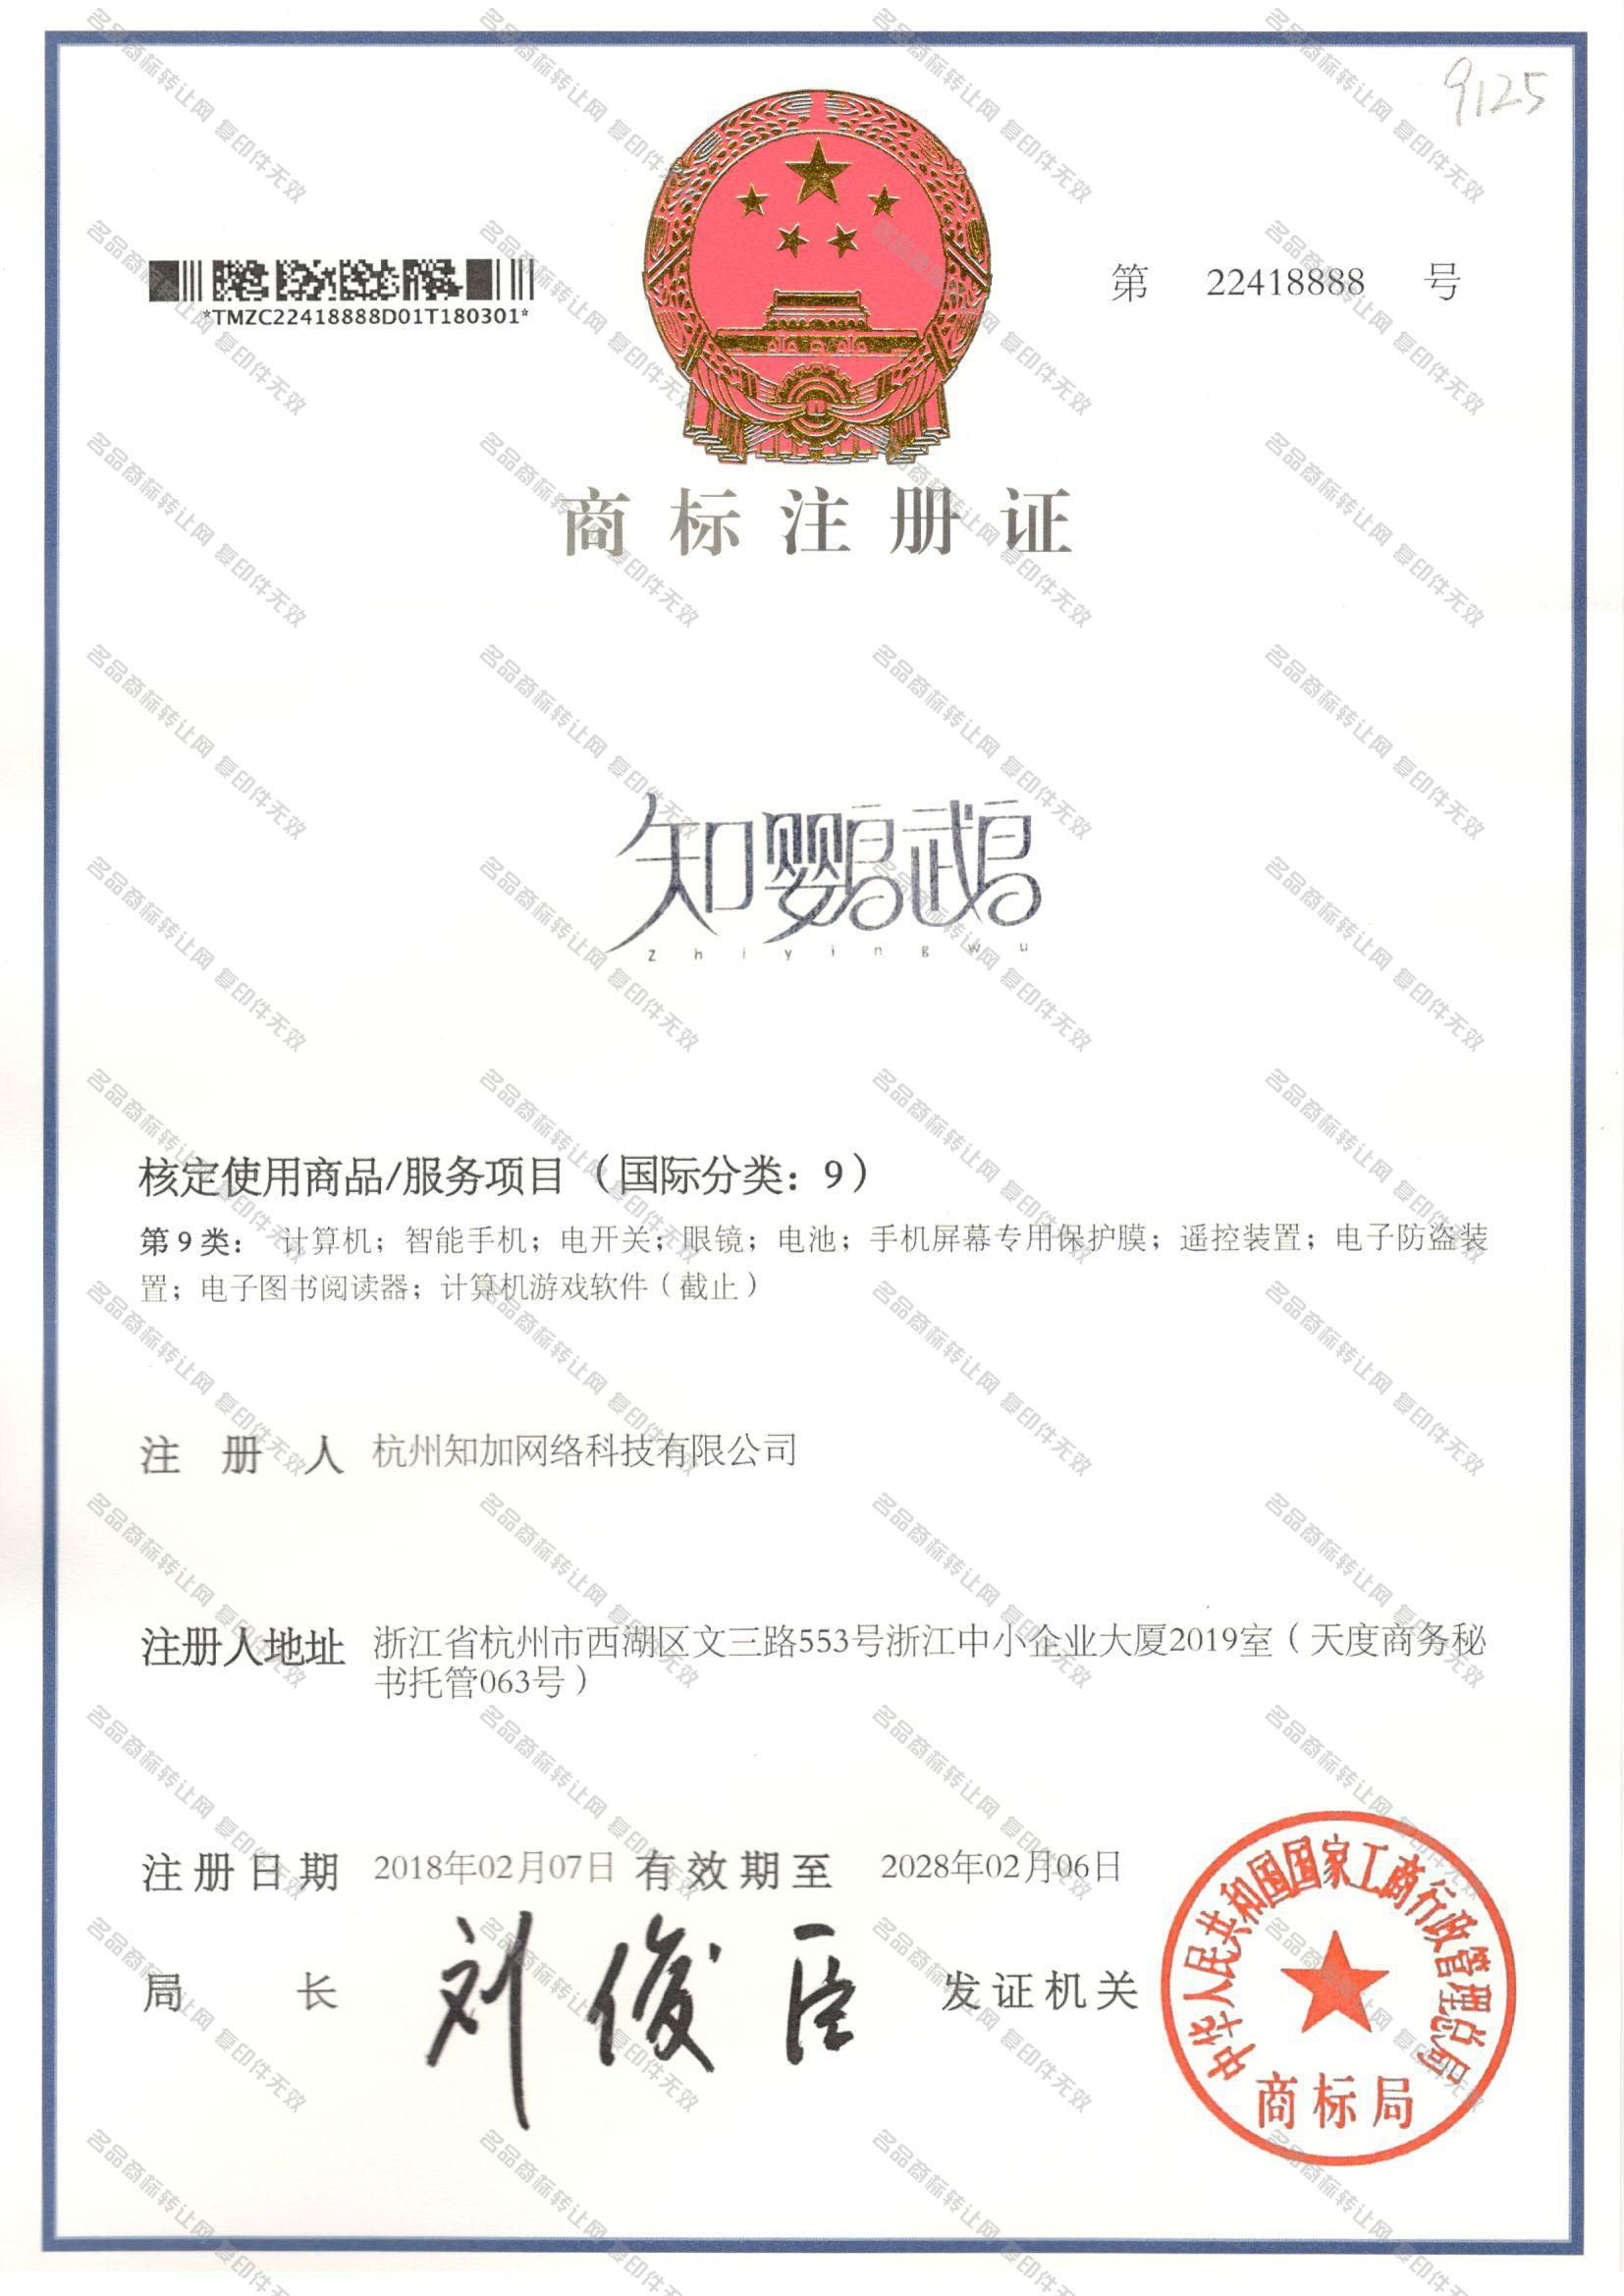 知鹦鹉 ZHIYINGWU注册证